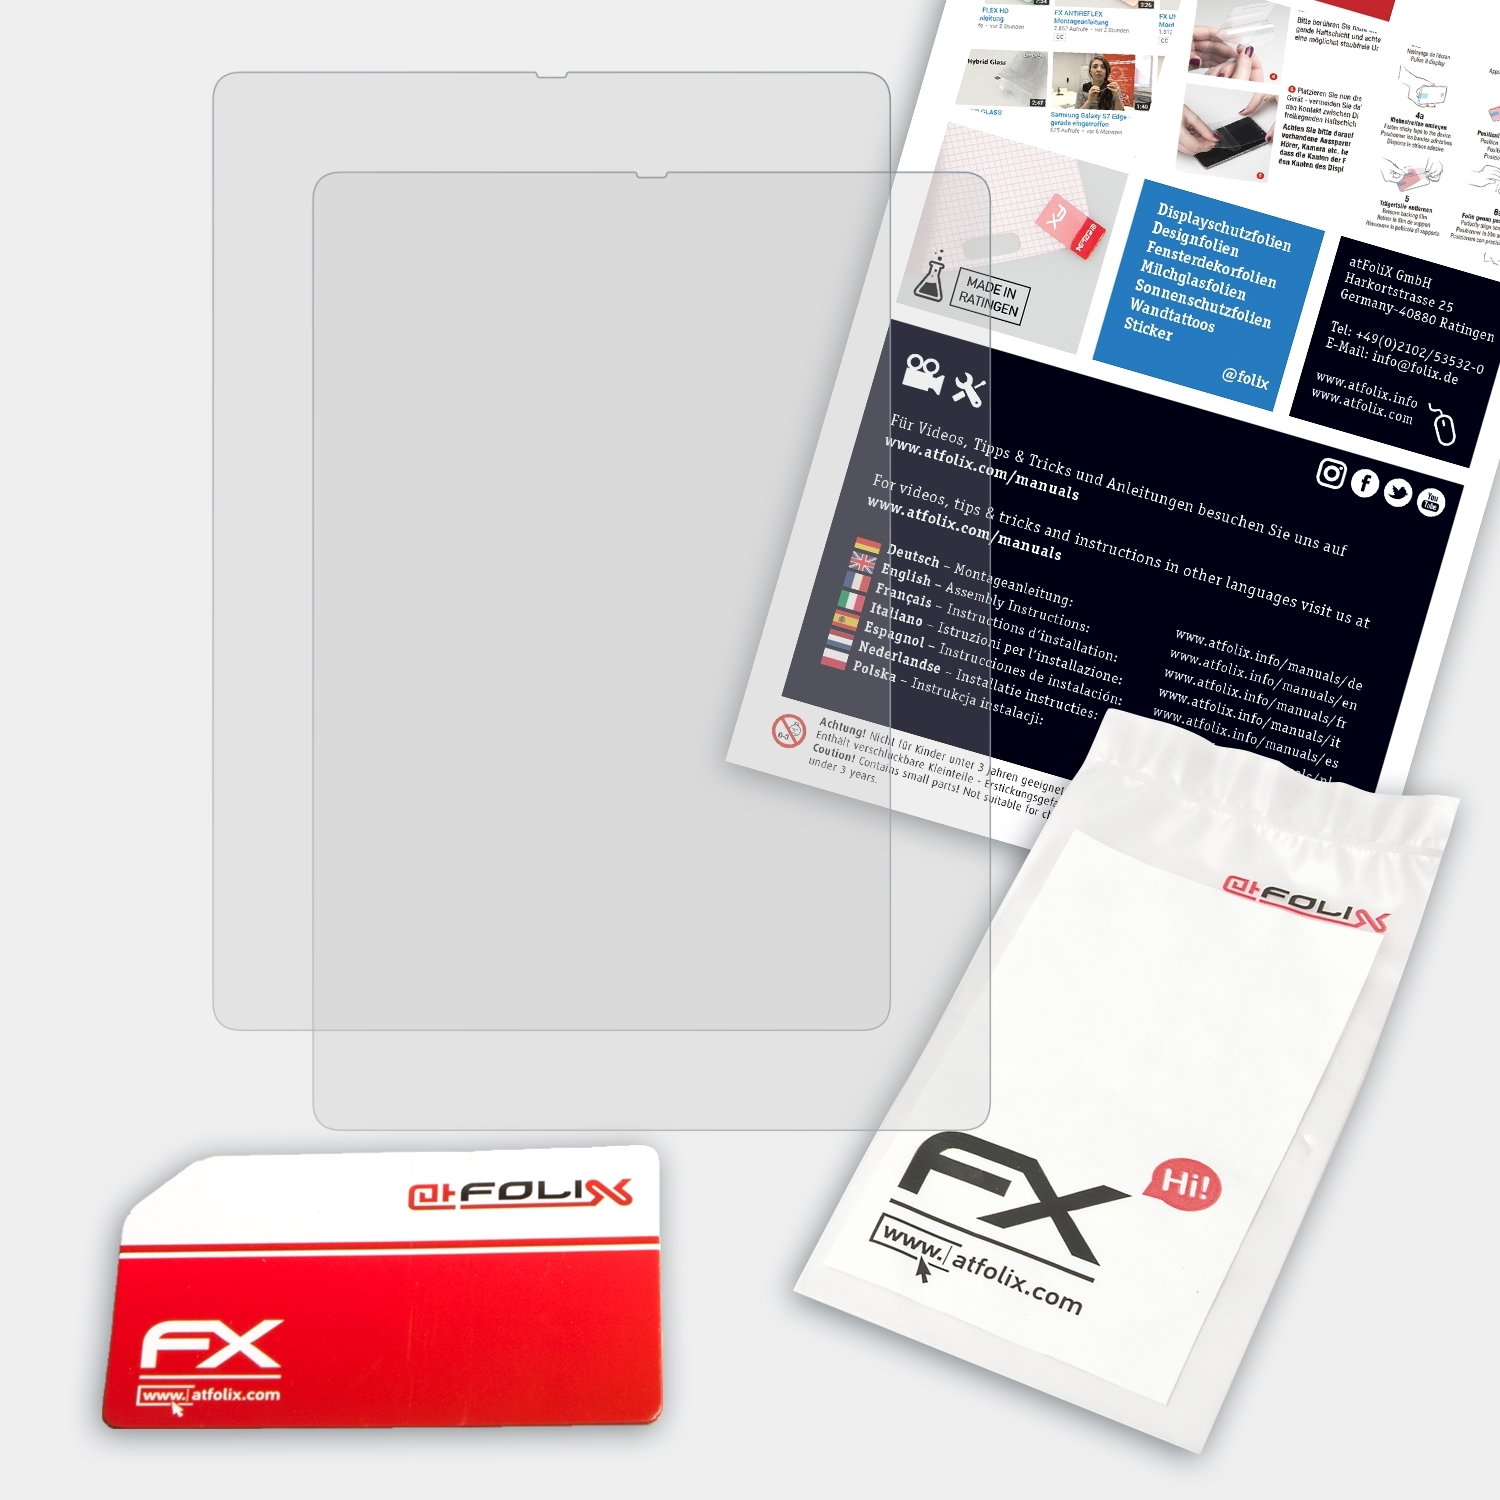 ATFOLIX 2x FX-Antireflex (11 Edition Displayschutz(für Gen. Amazon Kindle Signature Paperwhite 2021))